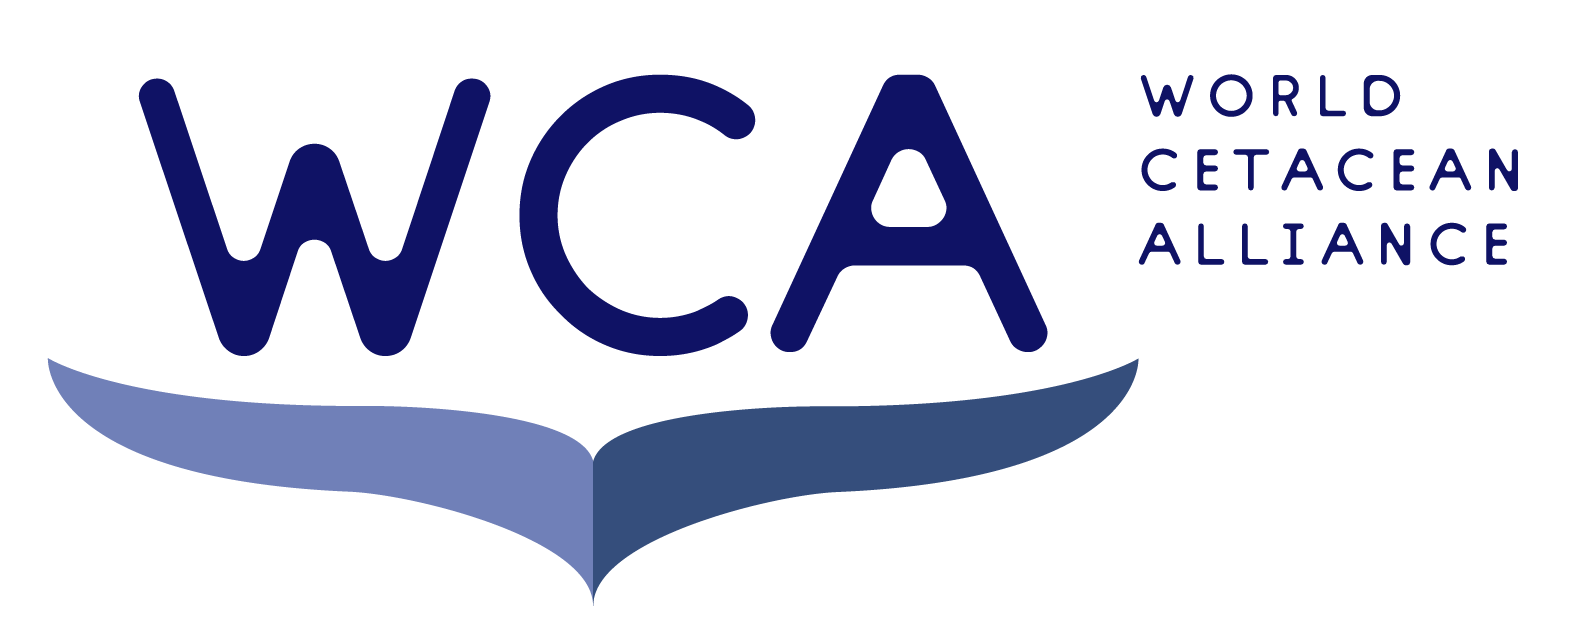 WCA Logo - World Cetacean Alliance